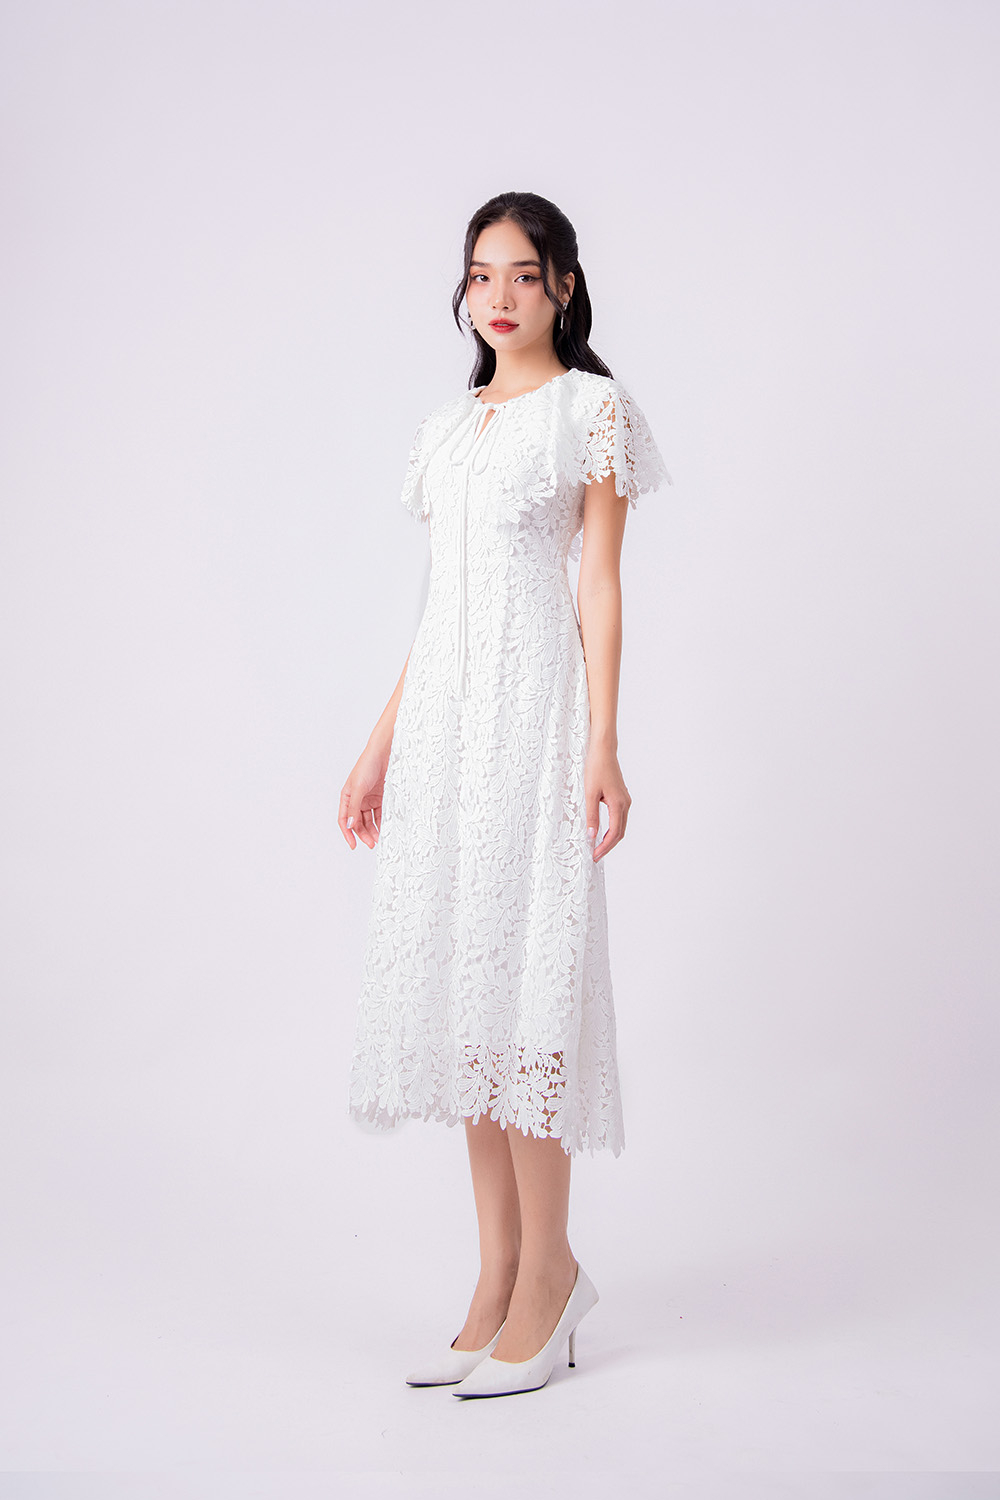 Đầm xoè liền thân xếp ly dáng dài chất liệu trượt hàn cao cấp. váy trắng